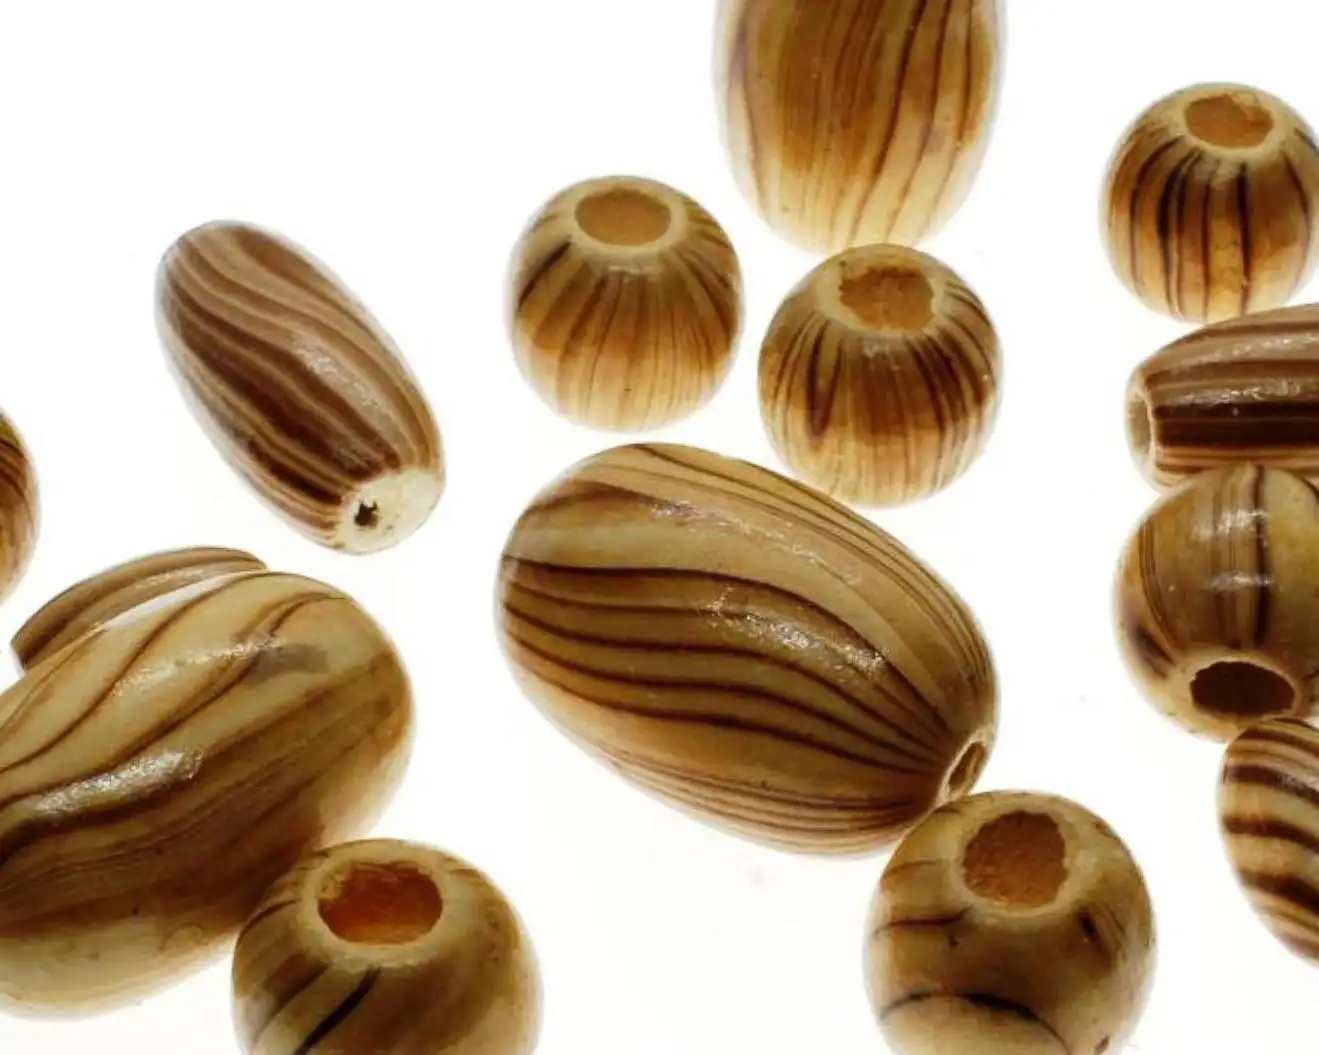 Holz Perlenmischung natürliche und braune Farbe Handwerk Hobby und Schmuck benutzerdefinierte farbige geformte Größe hölzerne Perlen in Indien hergestellt